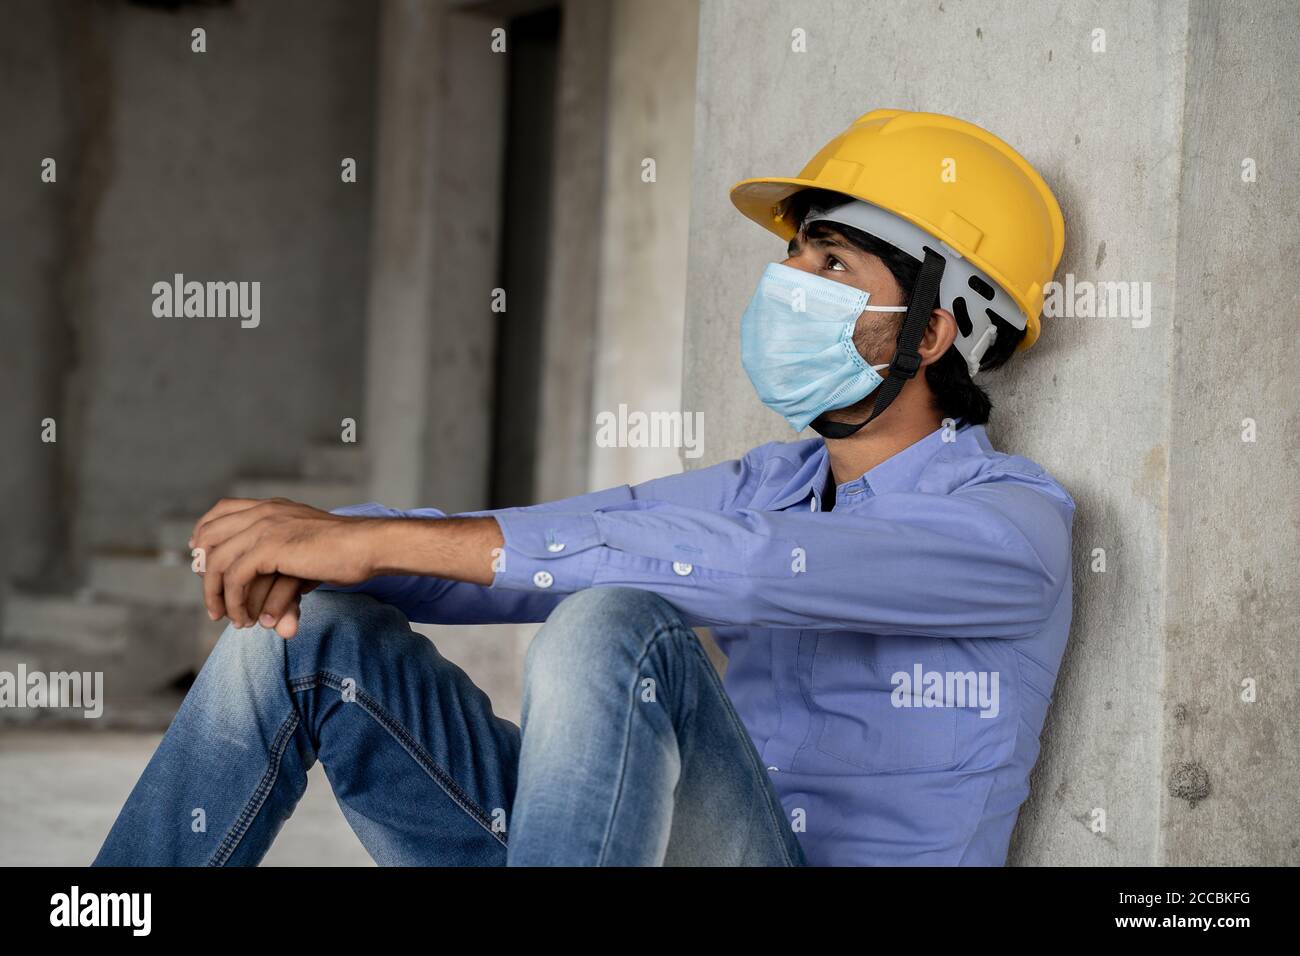 Vue latérale de la tête du travailleur de la construction qui voit à l'extérieur Bâtiment de construction fenêtre dans Sad - travailleur industriel dans un casque avec masque médical Banque D'Images